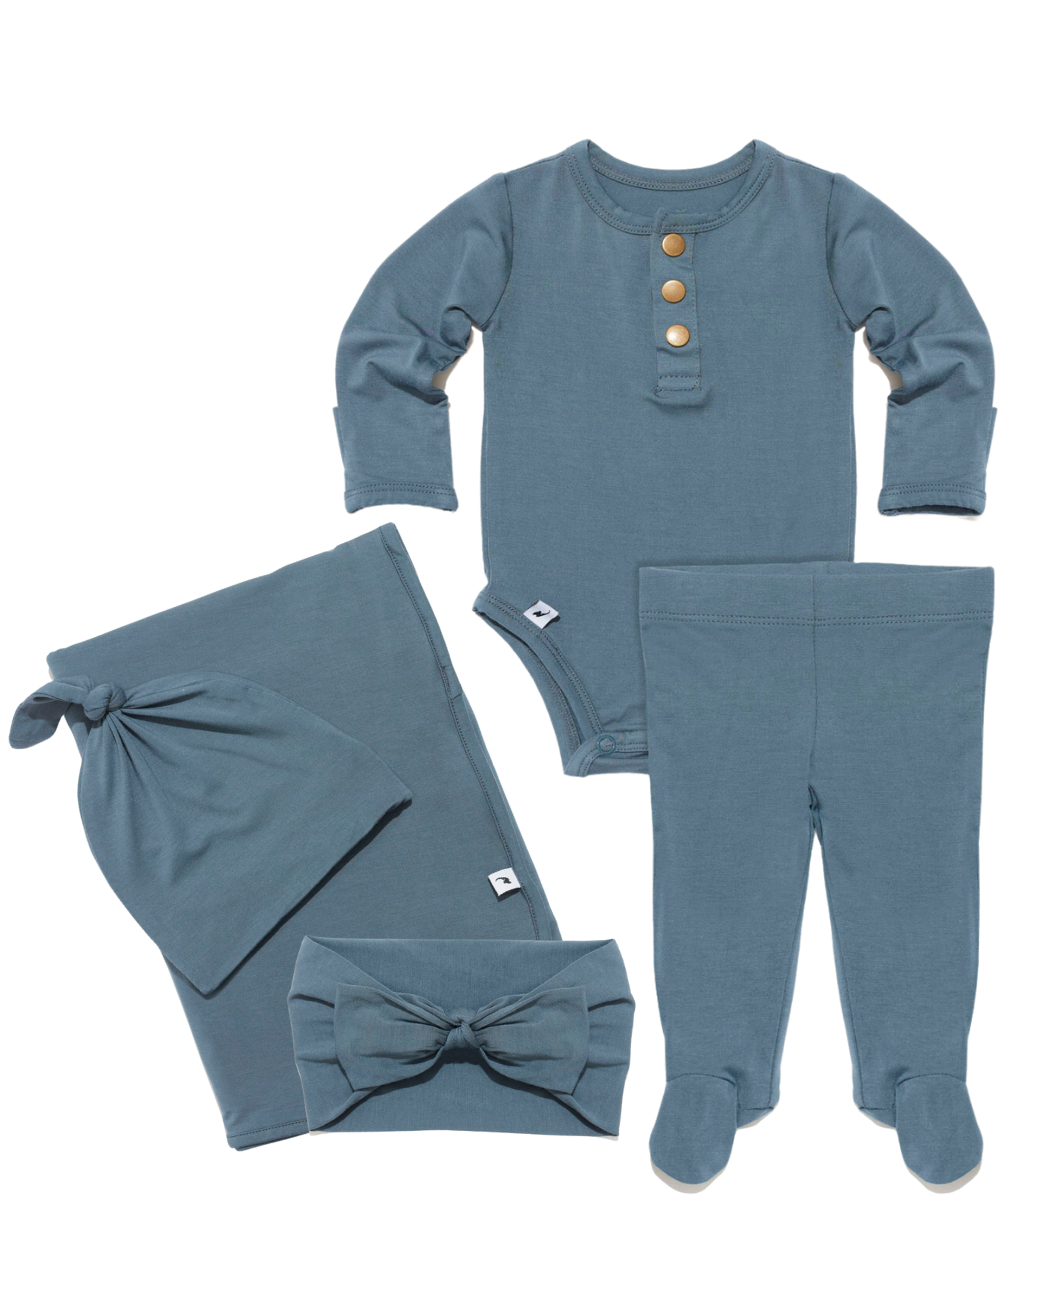 Navy newborn essential bundle (two piece set)